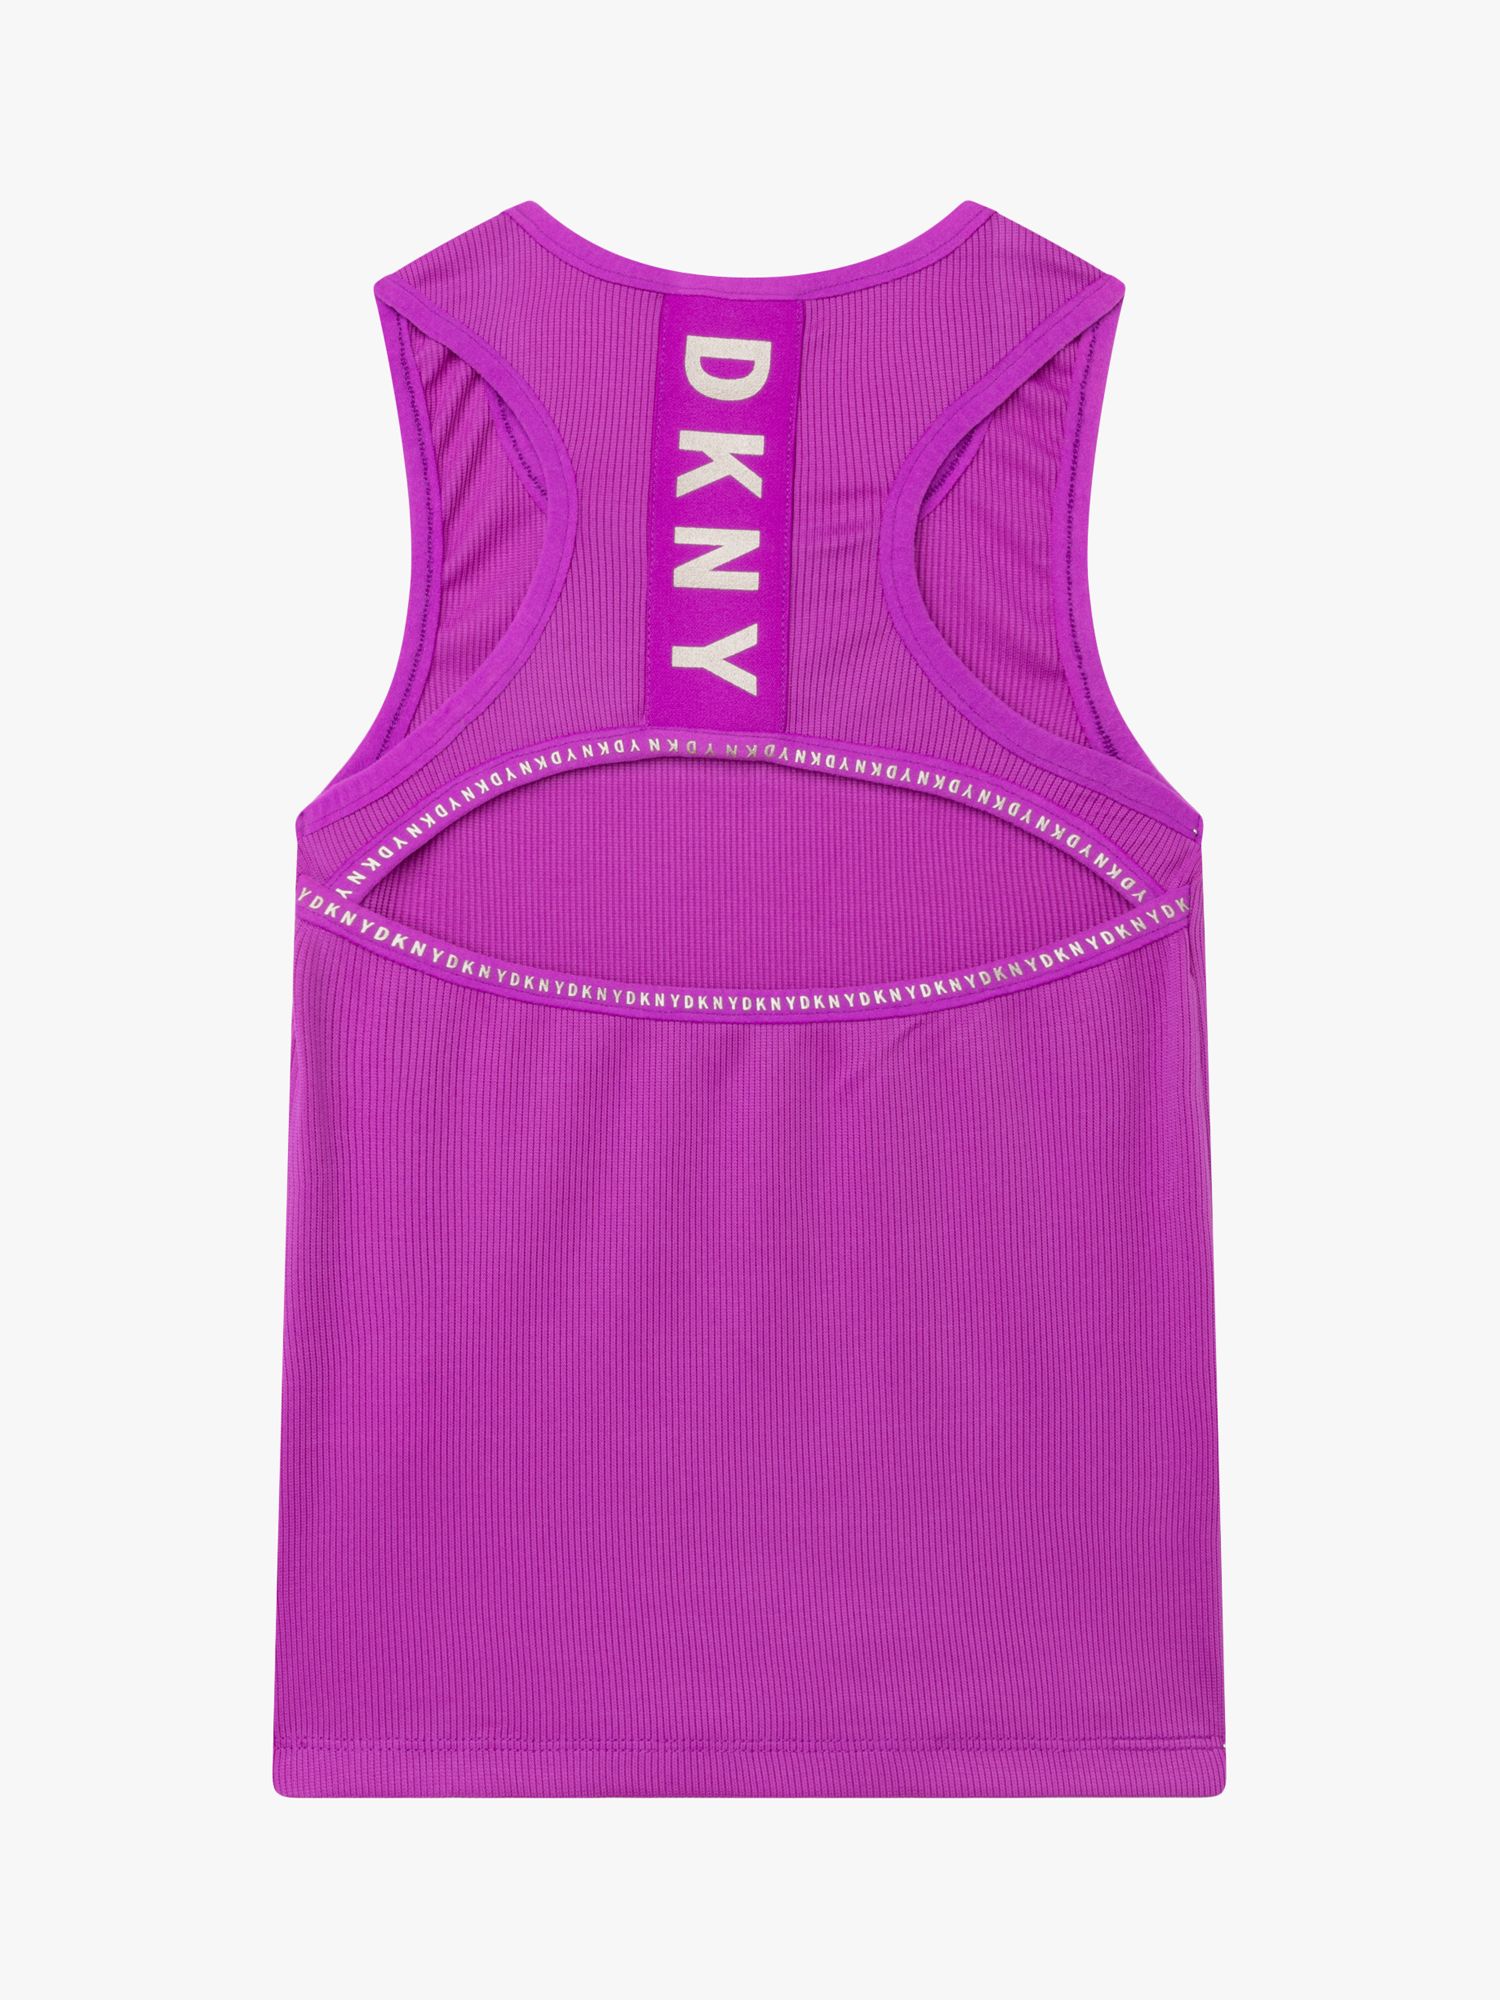 DKNY Kids' Tank Top, Violet, 4 years